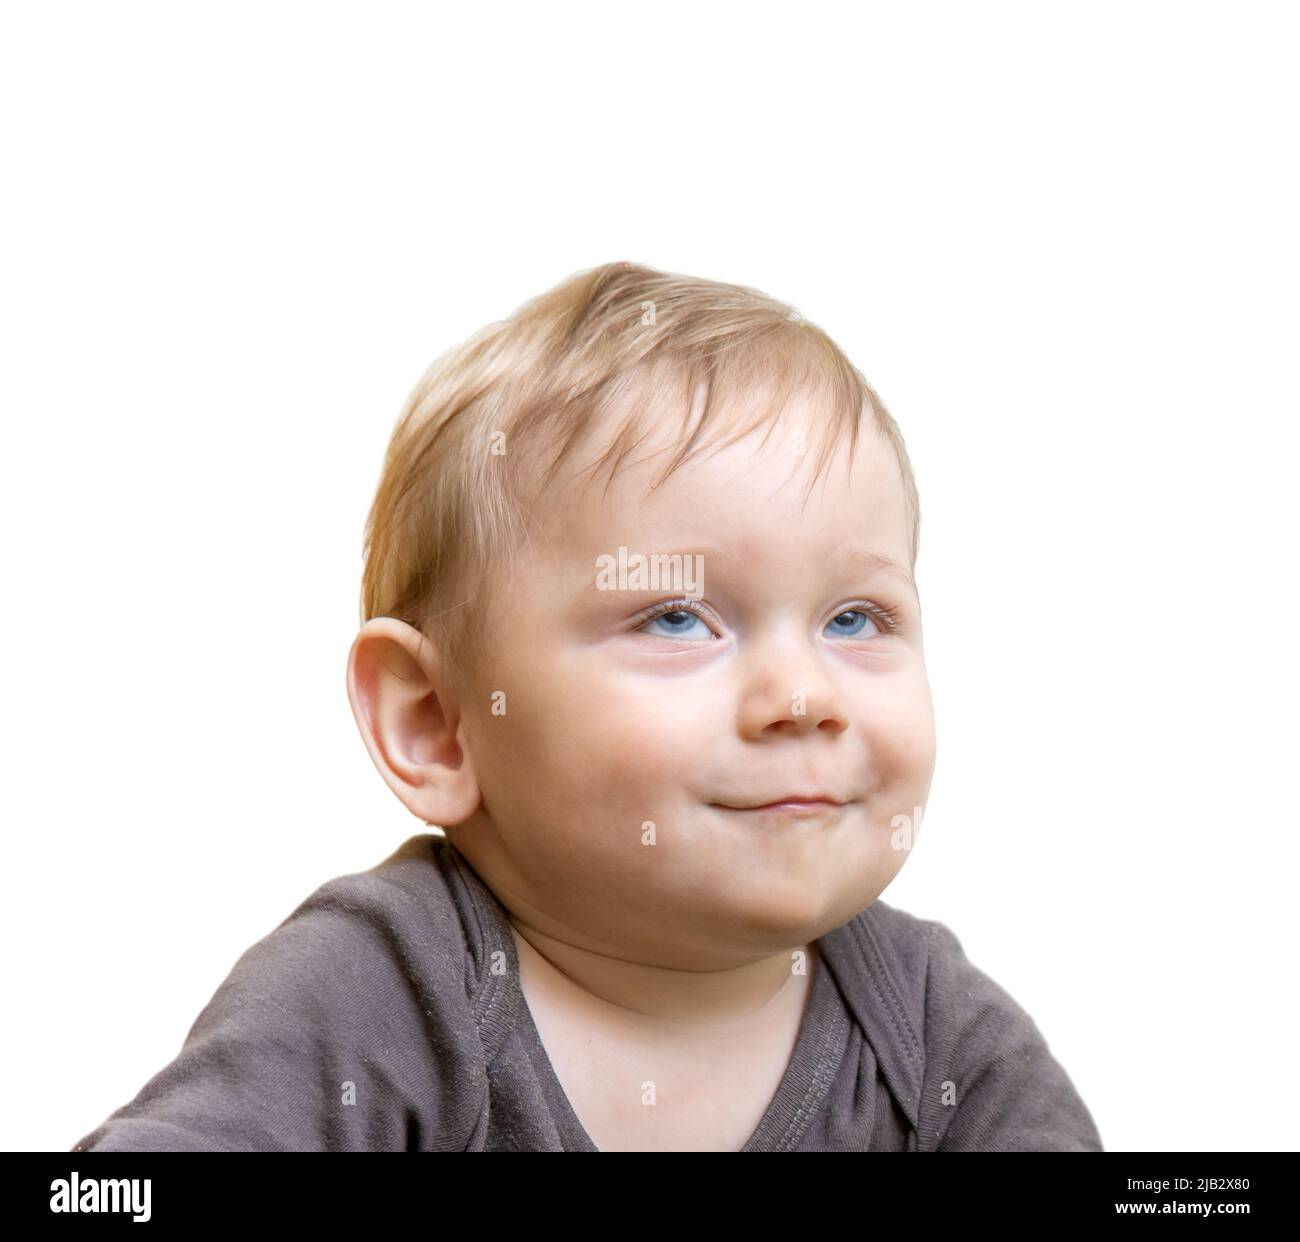 Le portrait d'un garçon souriant avec les yeux vers le haut, isolé sur fond blanc Banque D'Images